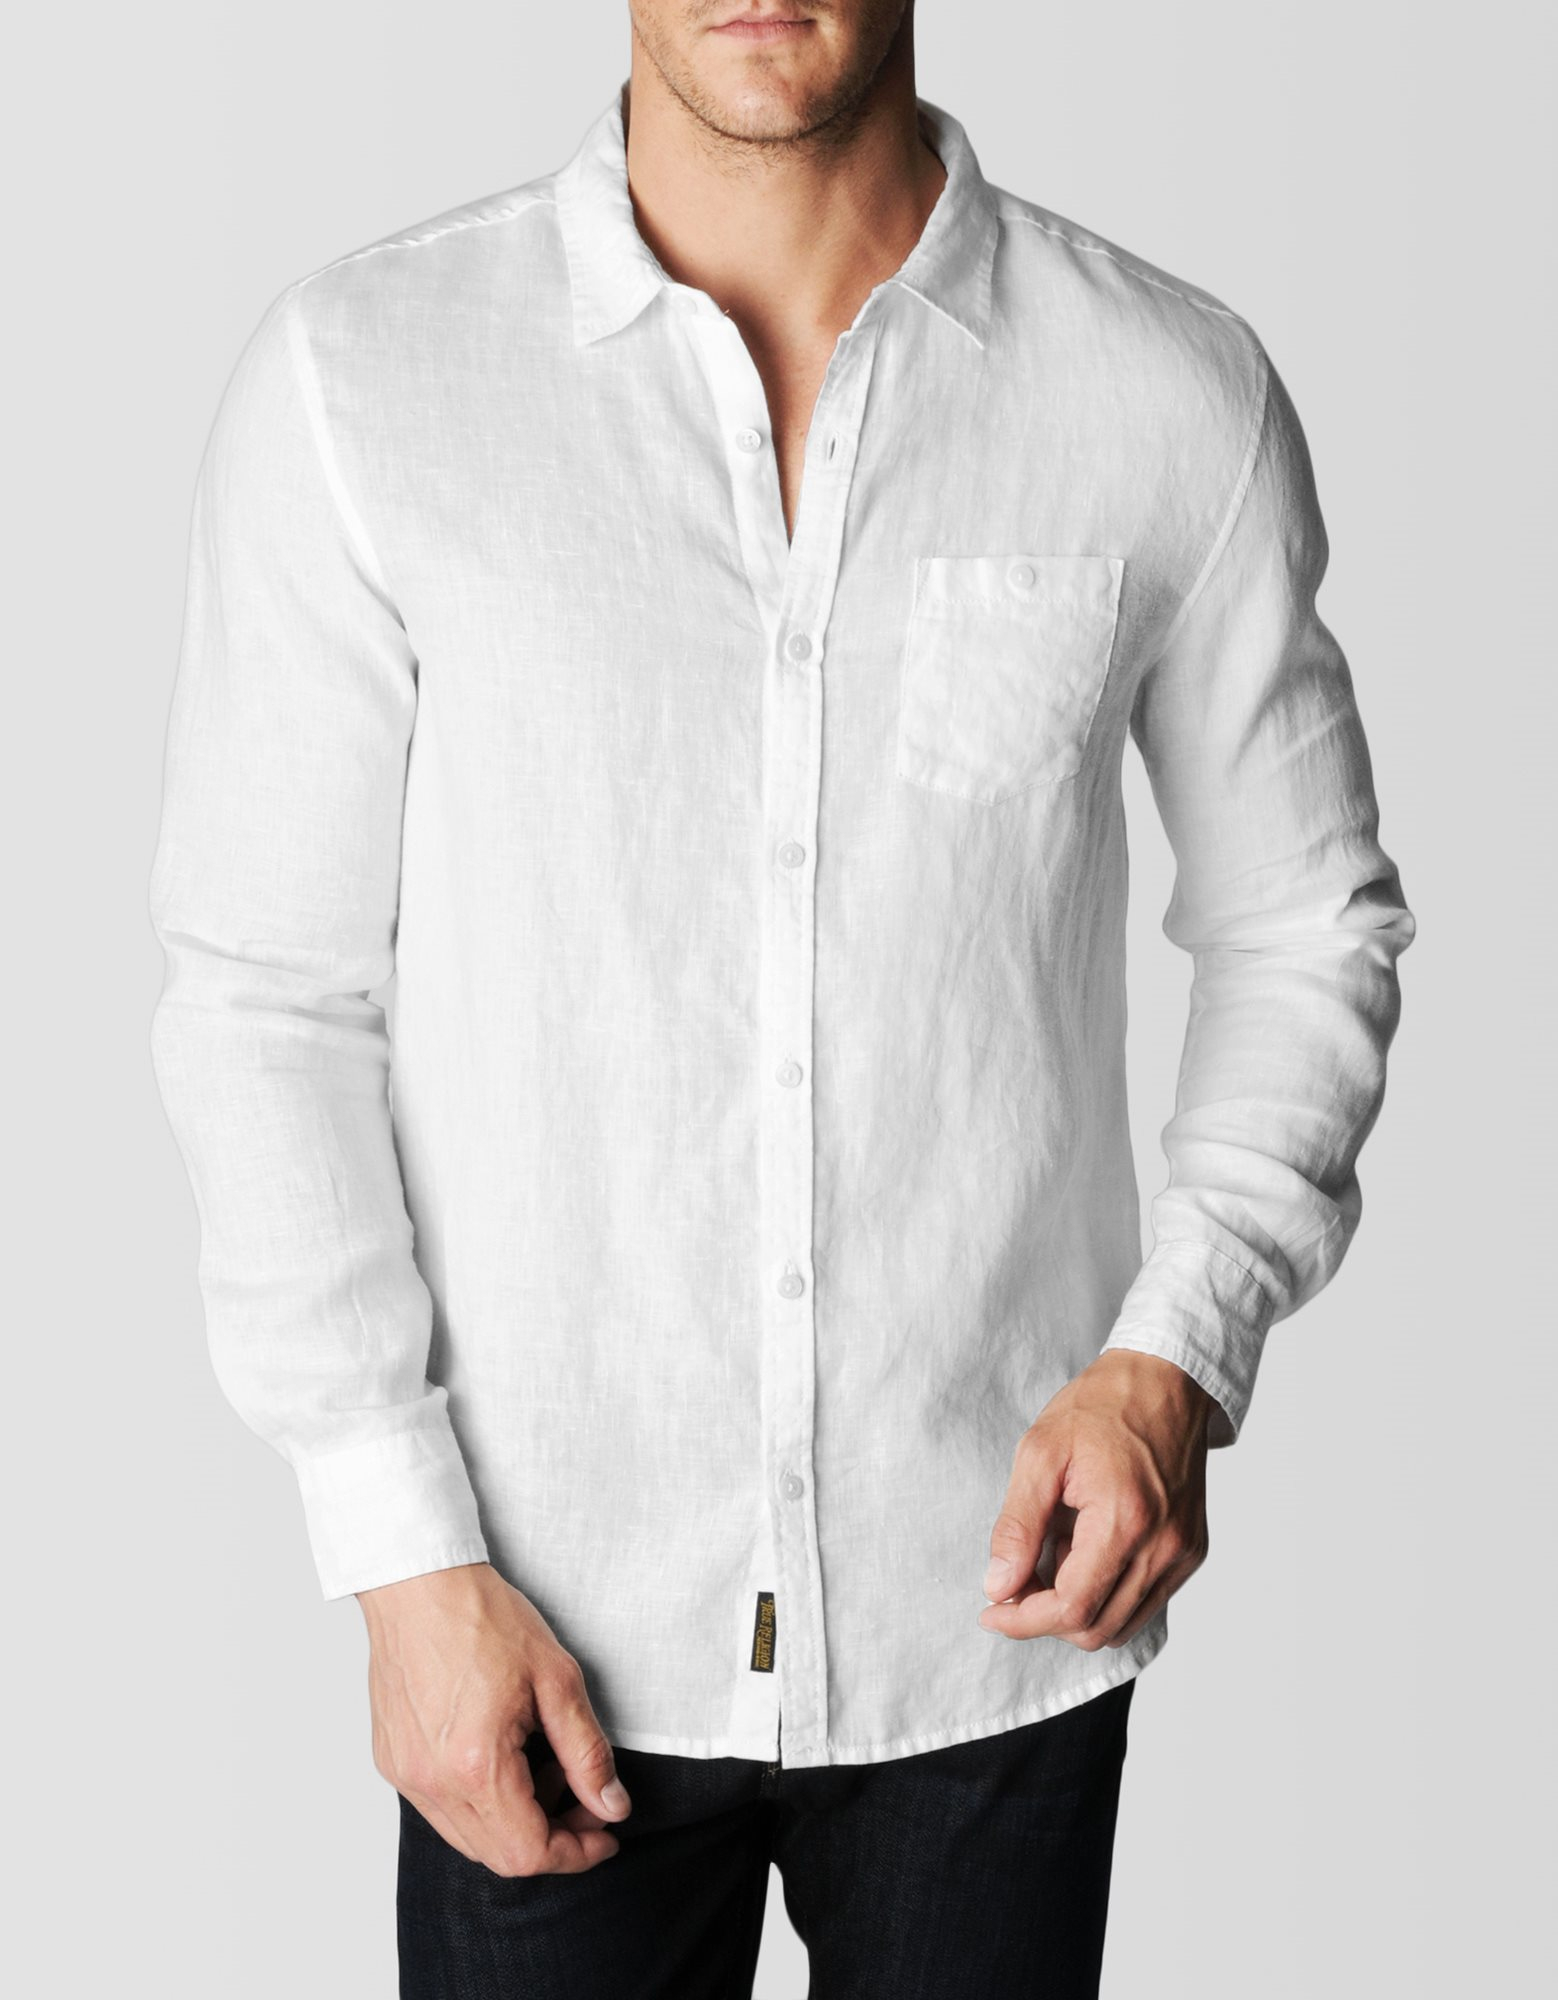 Біла з. Springfield Linen est1988 рубашка мужская. Белая рубаха мужская. Мужская белая рубашка. Белая рубашка мужская с длинным рукавом.